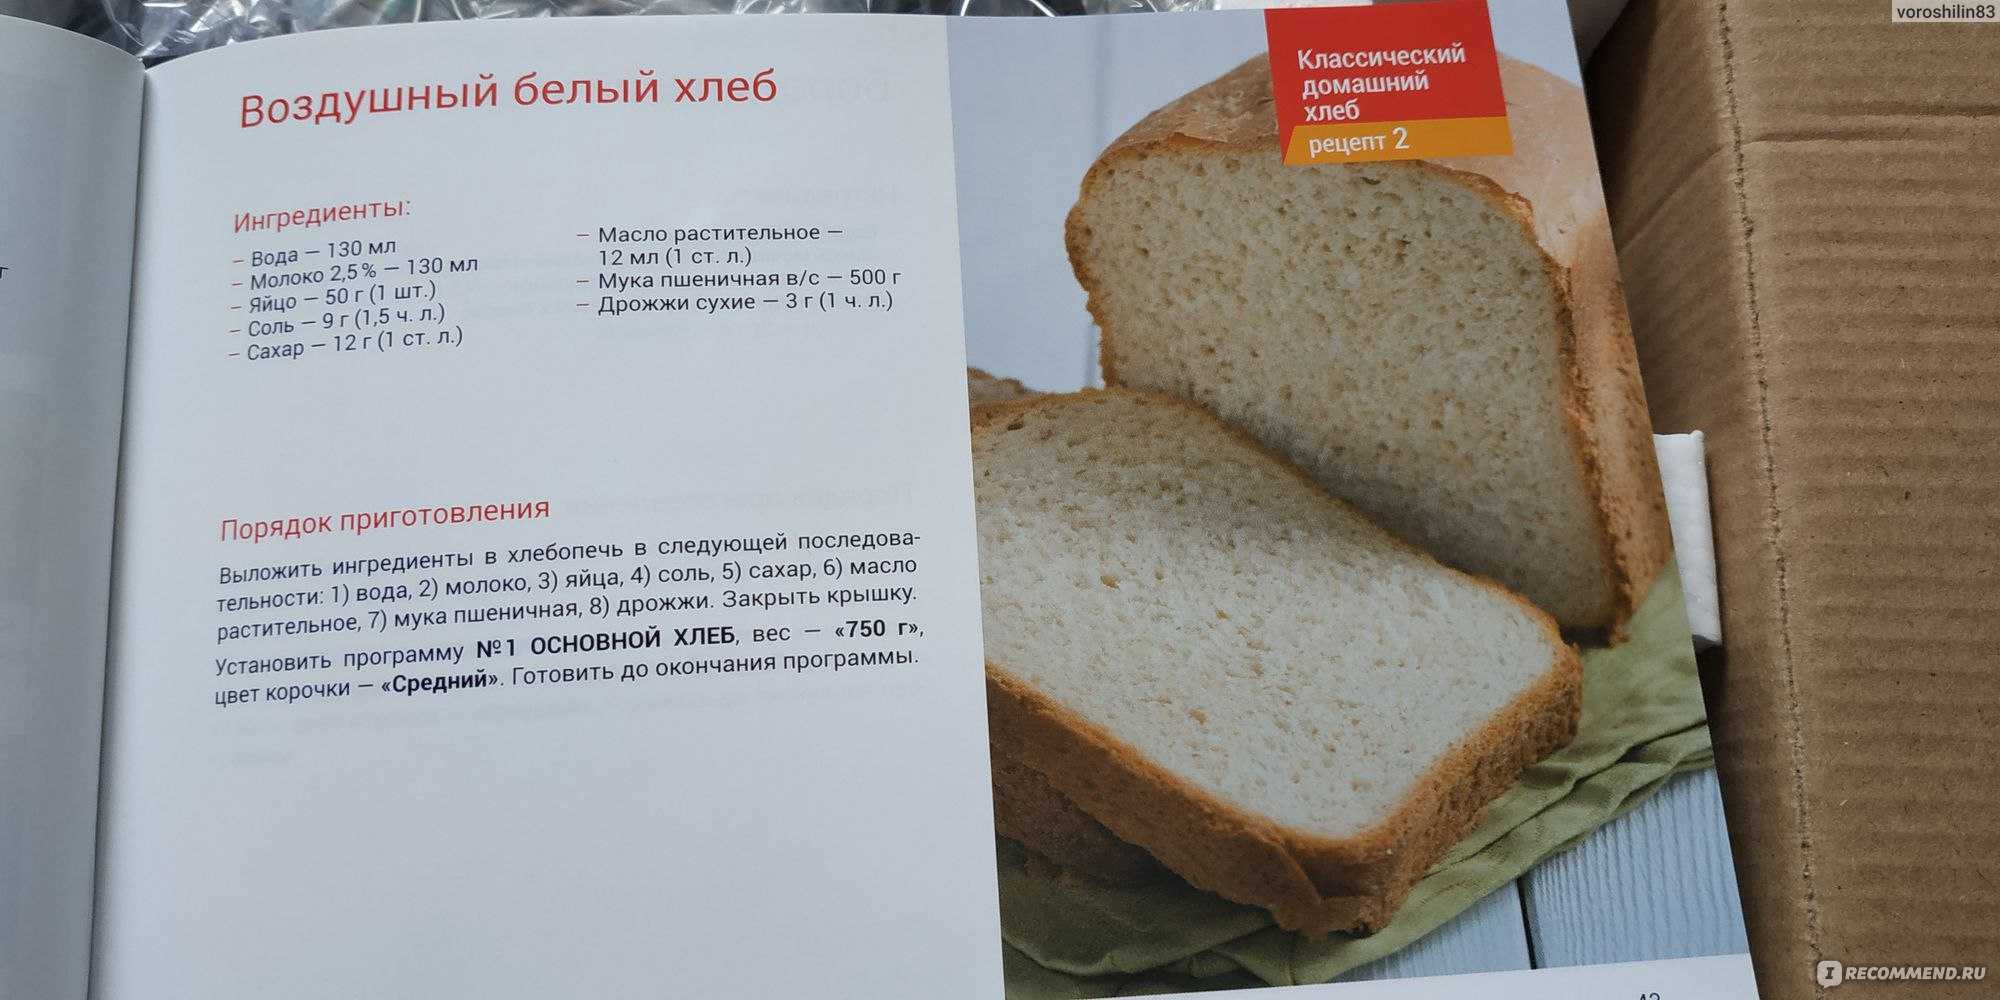 1000 рецепты хлеба. Книжка с рецептами для хлебопечки. Рецепт хлеба. Рецепт белого хлеба для хлебопечки. Ингредиенты для выпечки хлеба в хлебопечке.